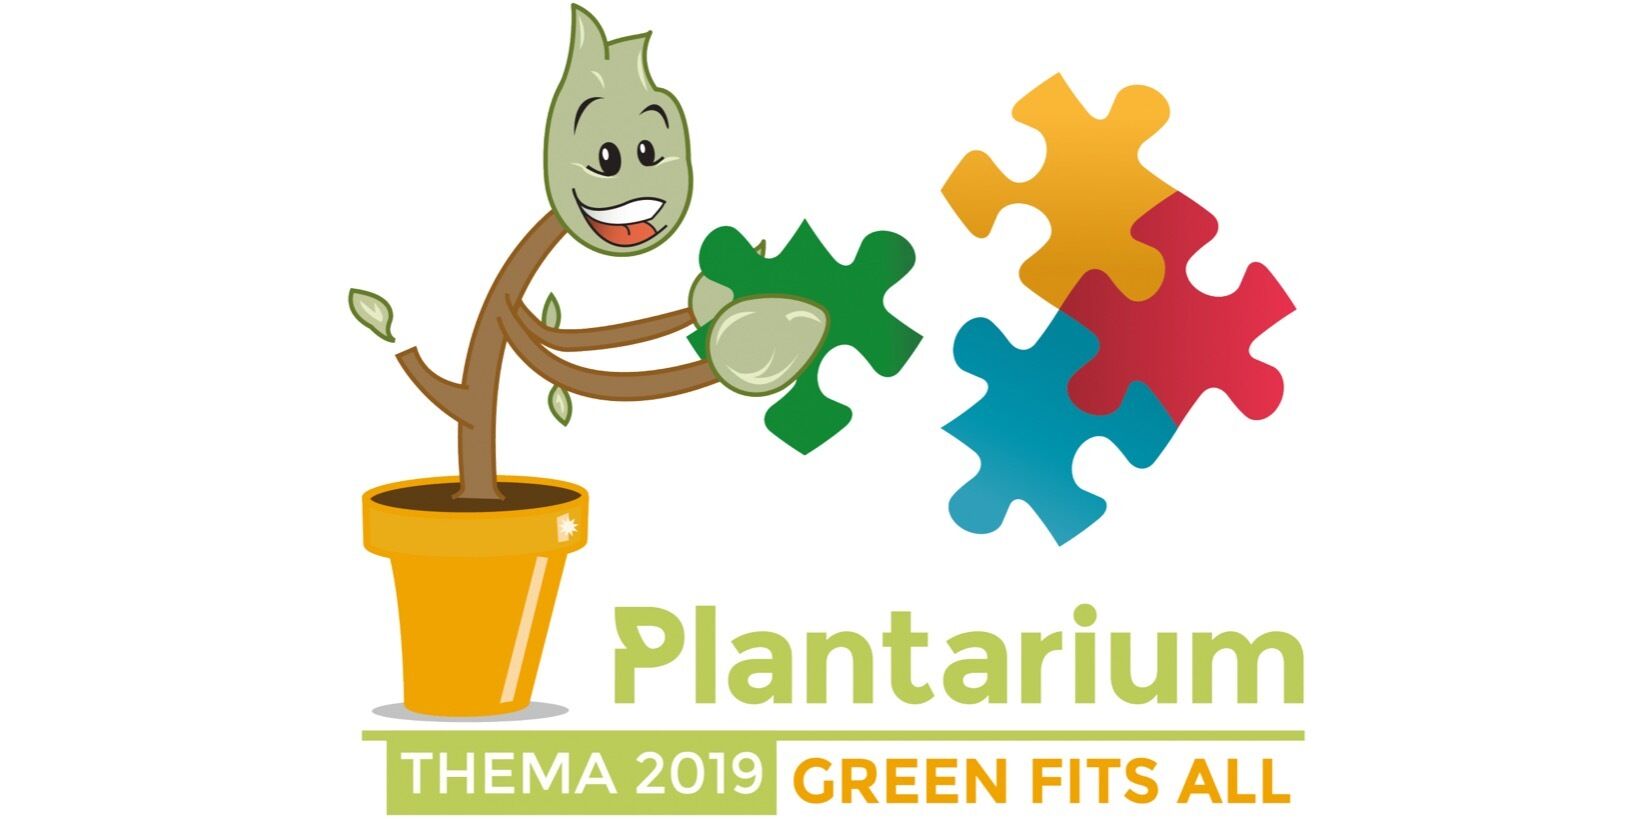 Plantarium 2019 – "Green Fits All"